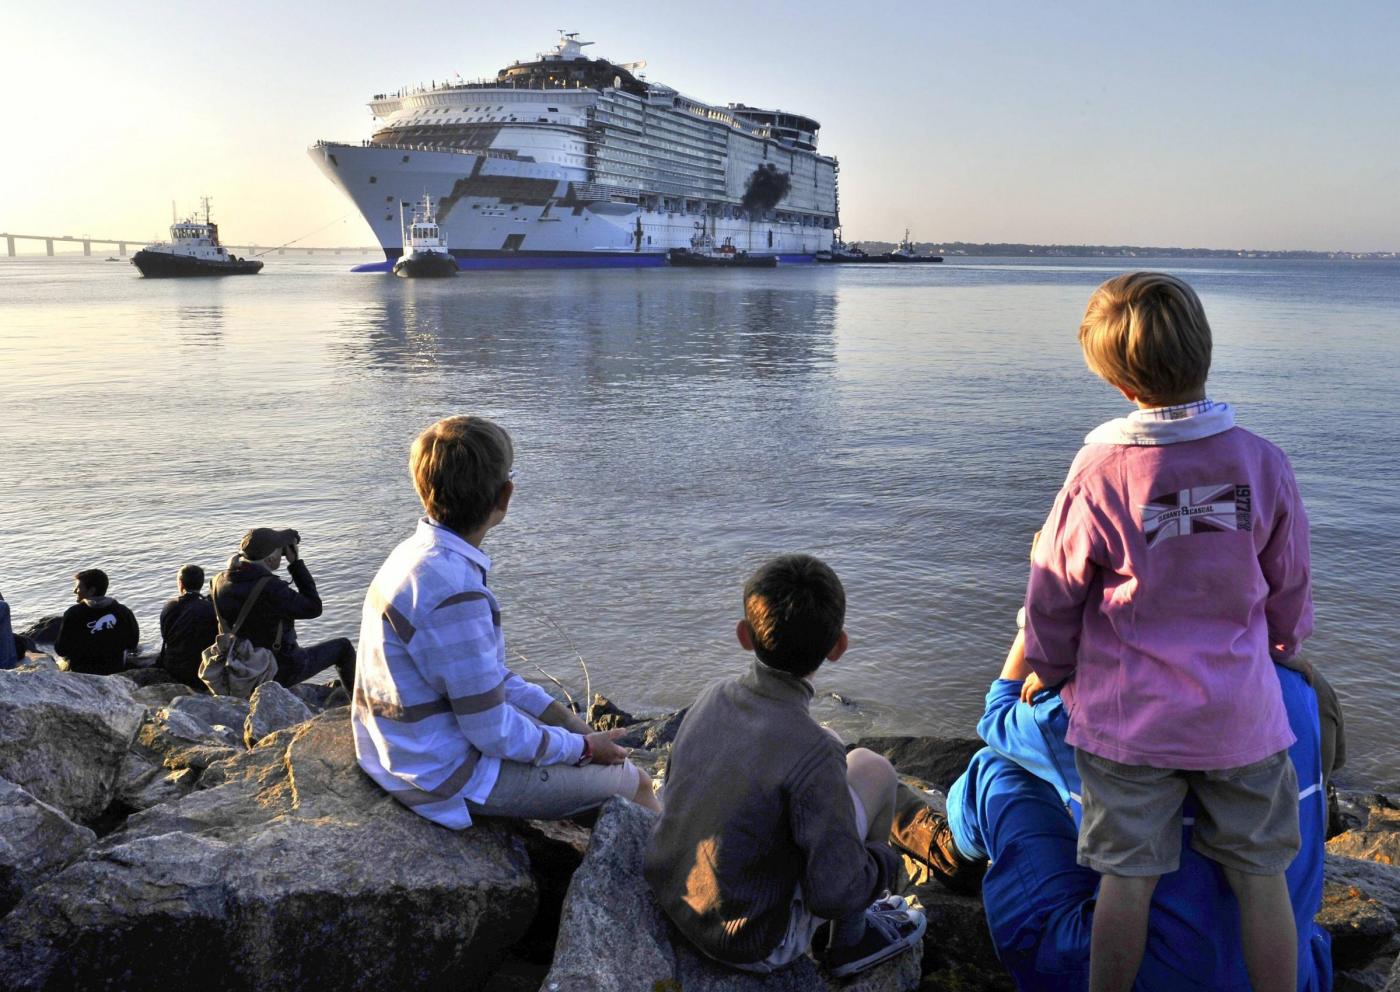 L'Harmony of the seas,la nave da crociera piu' grande del mondo lascia il cantiere di Saint Nazaire.